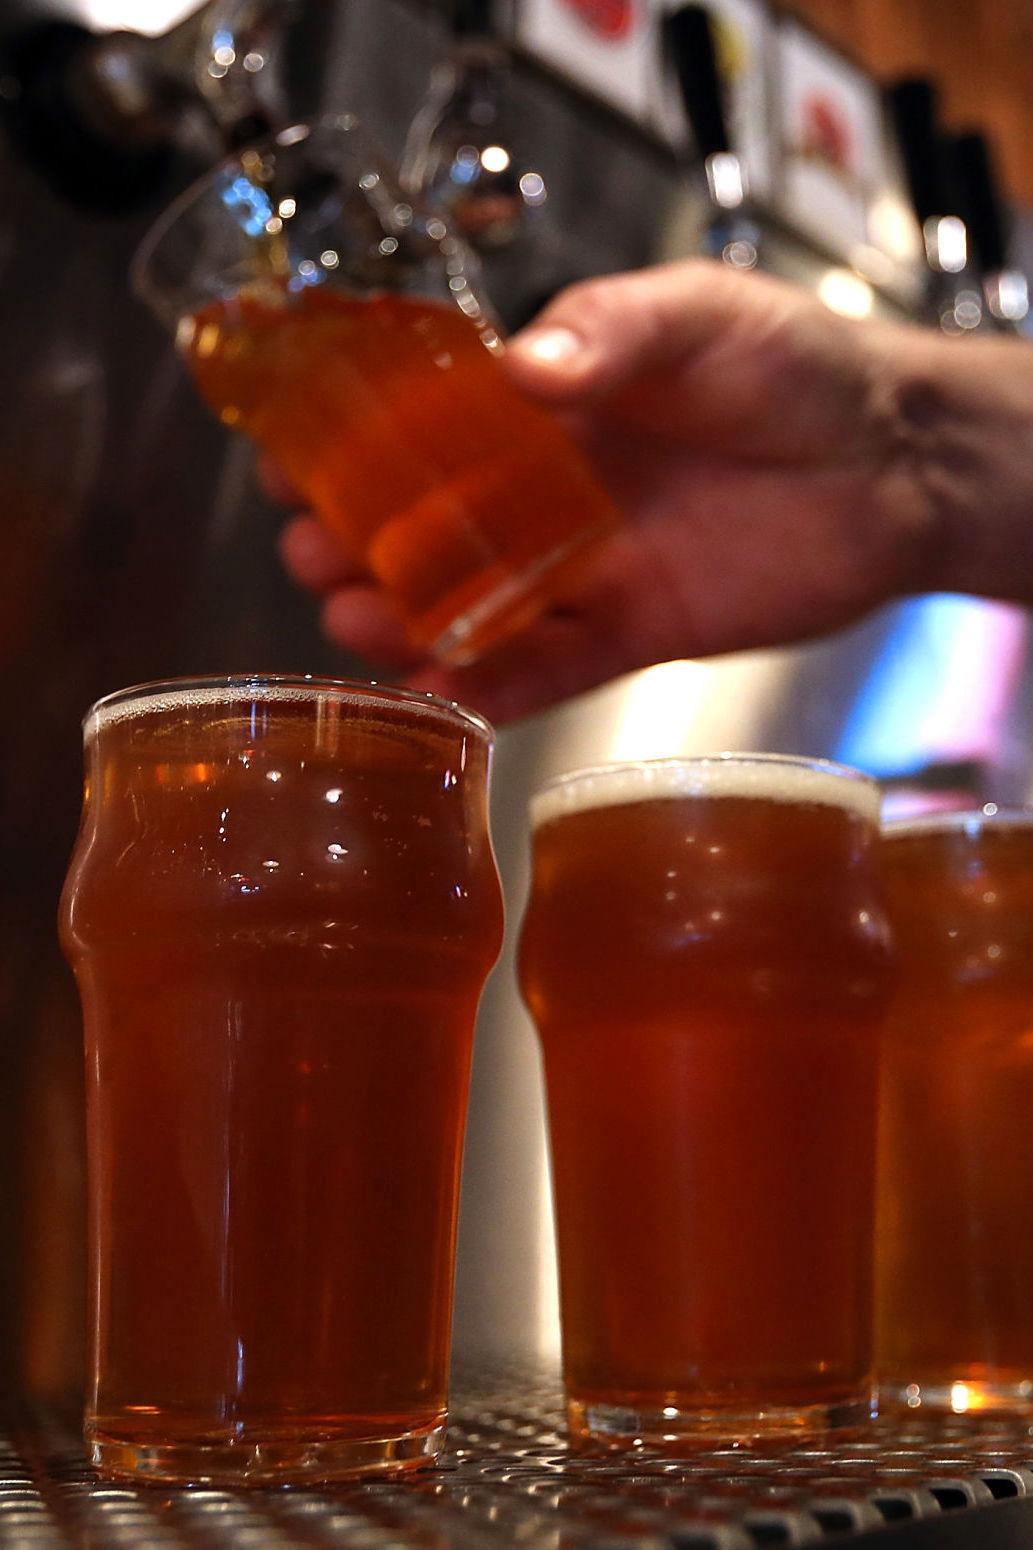 TILGANGEN REDUSERES: Ifølge studien vil tilgangen på øl bli dårligere, noe som fører til at prisene stiger kraftig. Foto: Justin Sullivan/AFP